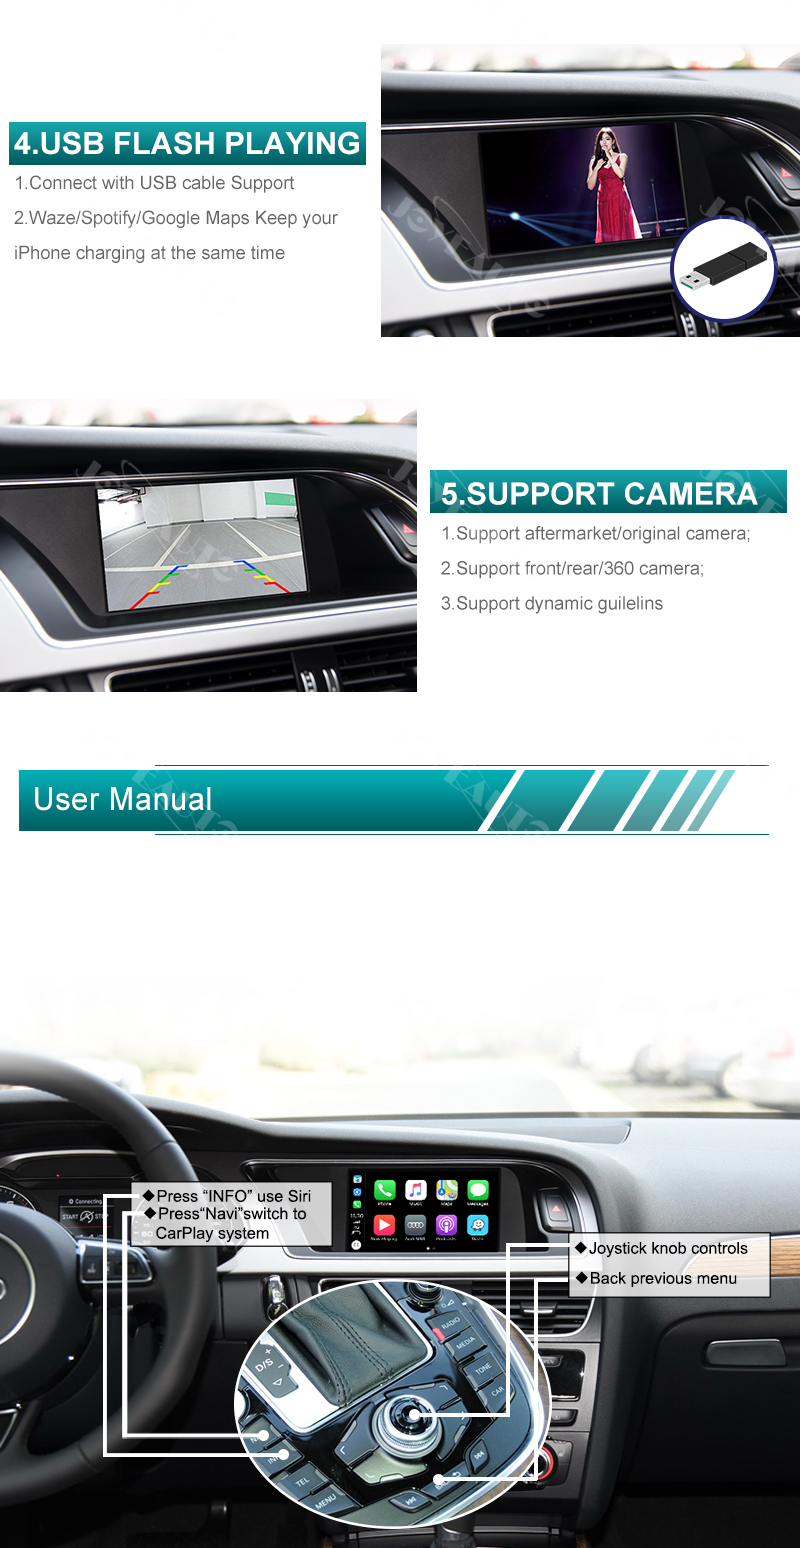 JOYEAUTO - Kit inalámbrico Carplay Android para Audi A3 MMI 3G A4 A5 Q2 Q7  B9 Carplay Decodificador, actualización de pantalla de fábrica, espejo de